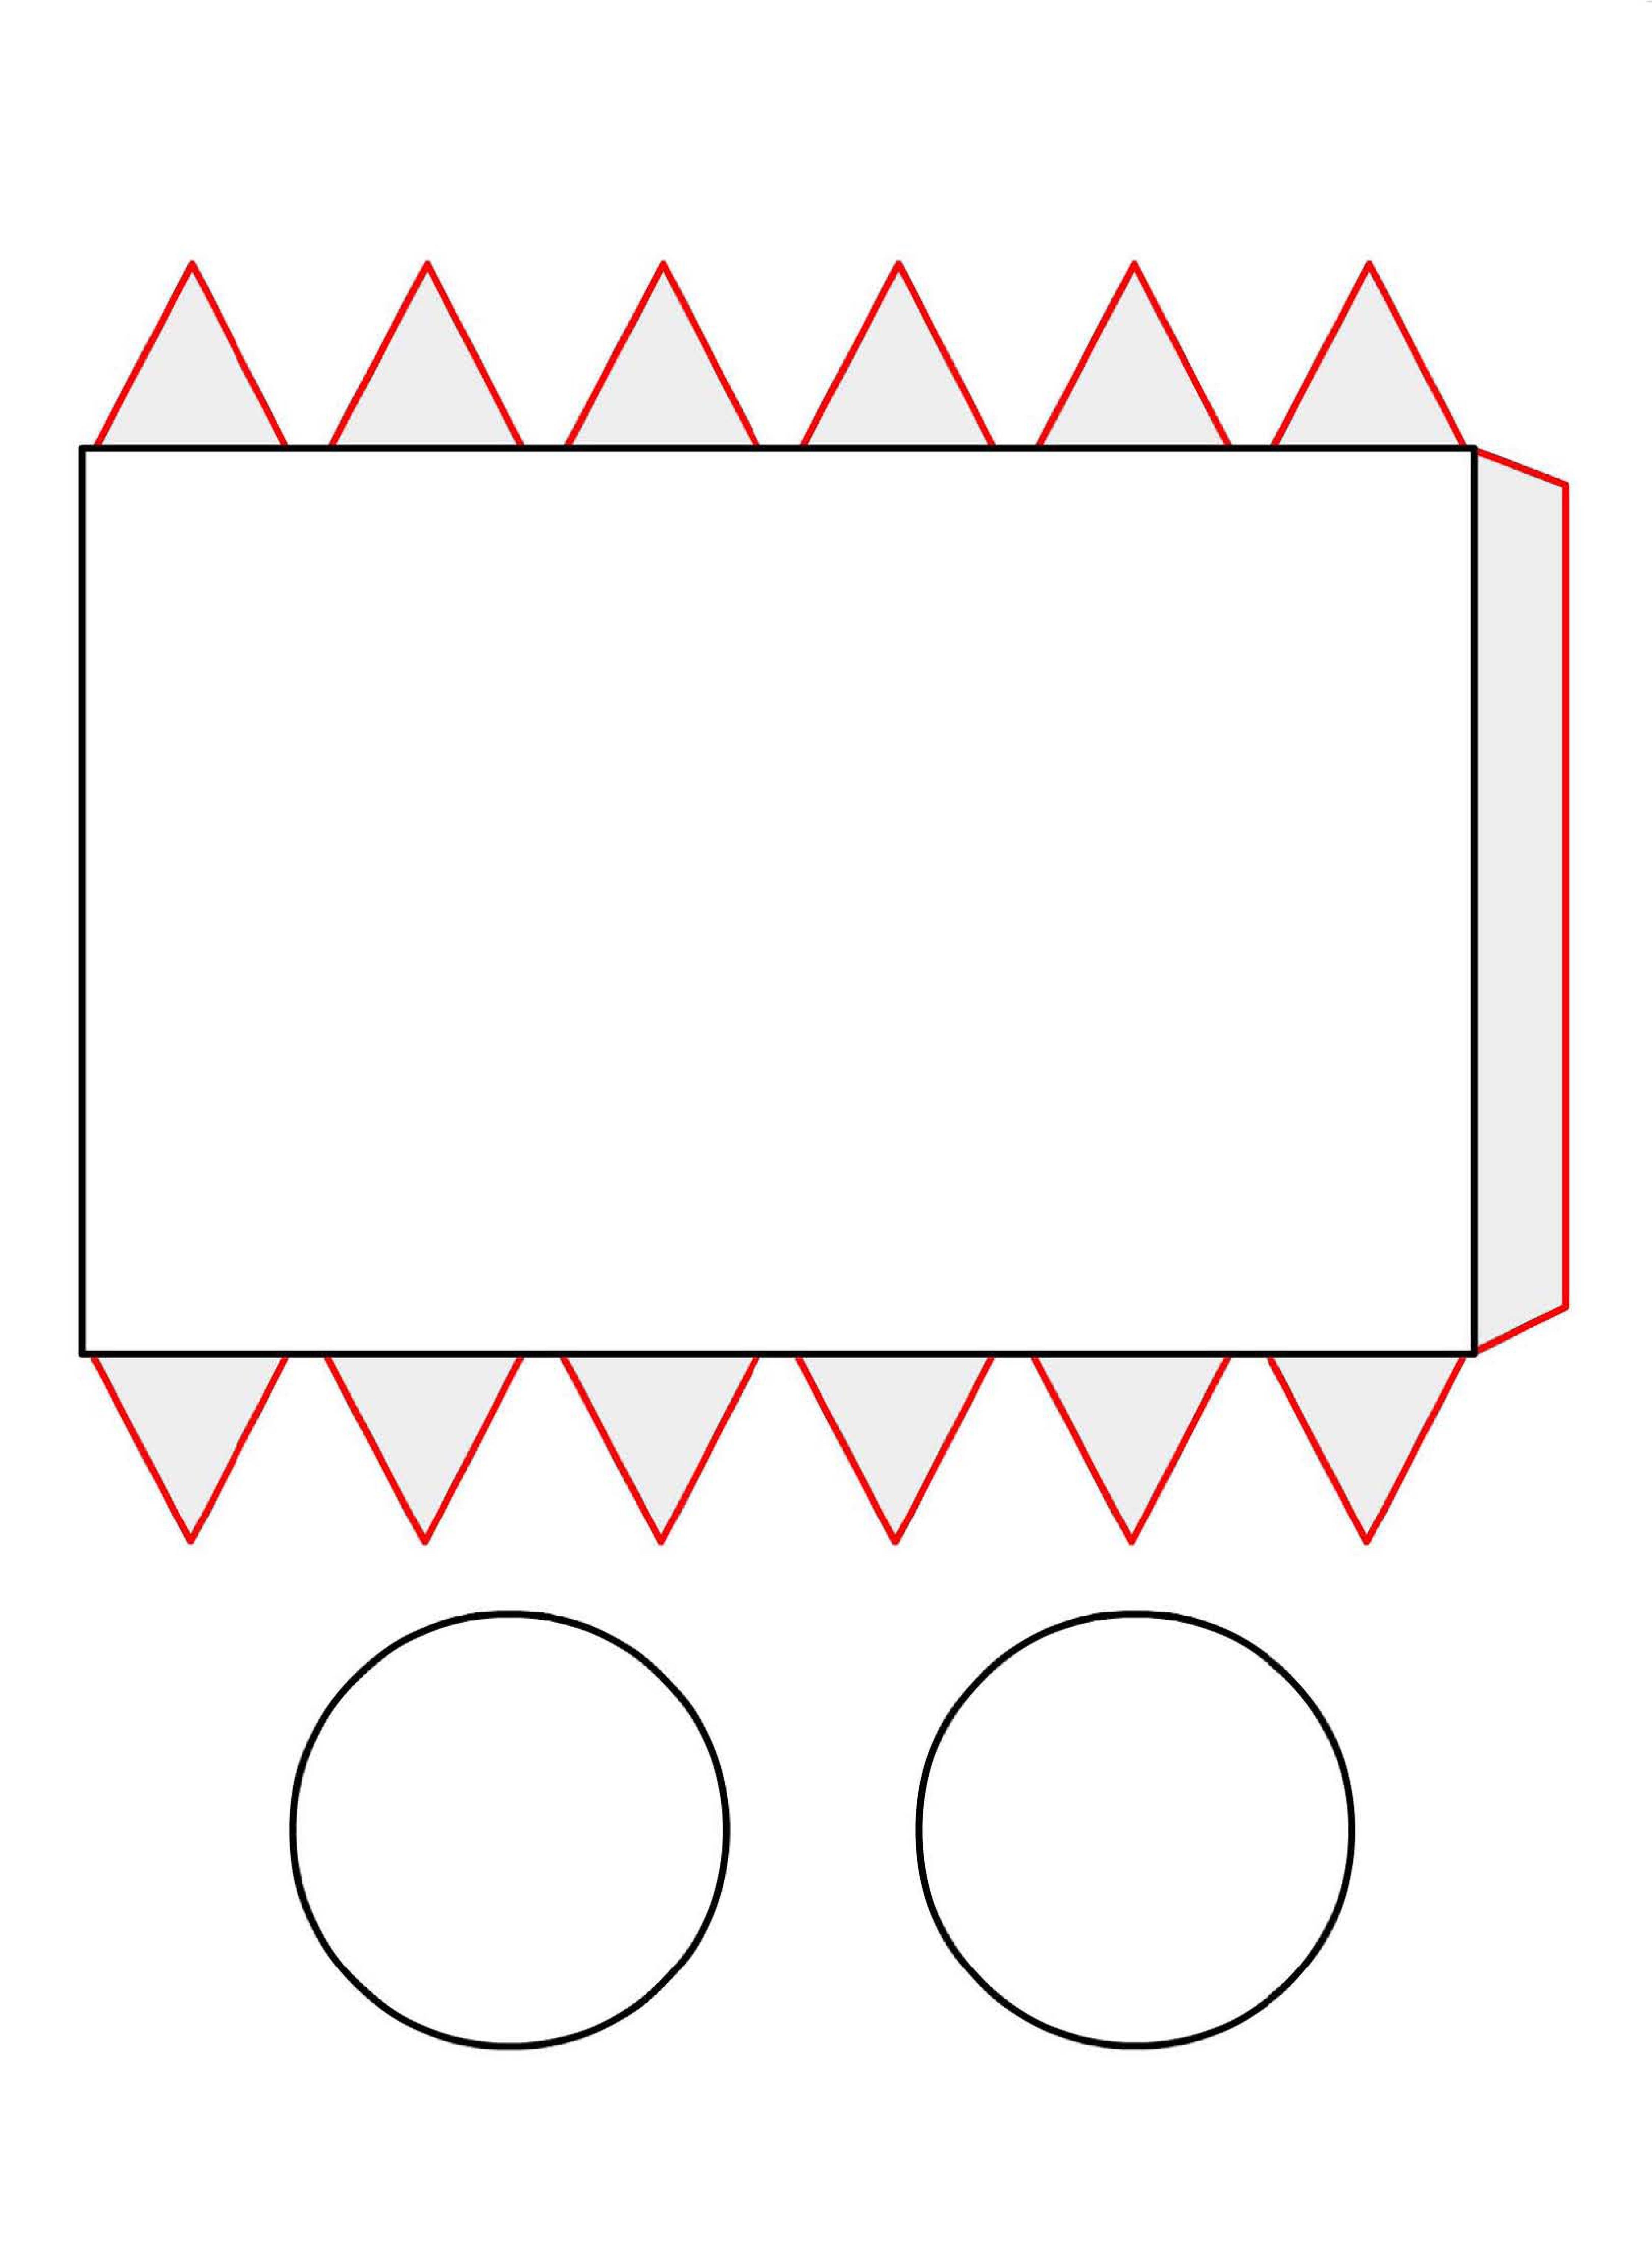 Как сделать объемные геометрические фигуры из бумаги, развертки для склеивания: куба, конуса, схемы и шаблоны для вырезания цилиндра, пирамиды, треугольника - женская жизньженская жизнь